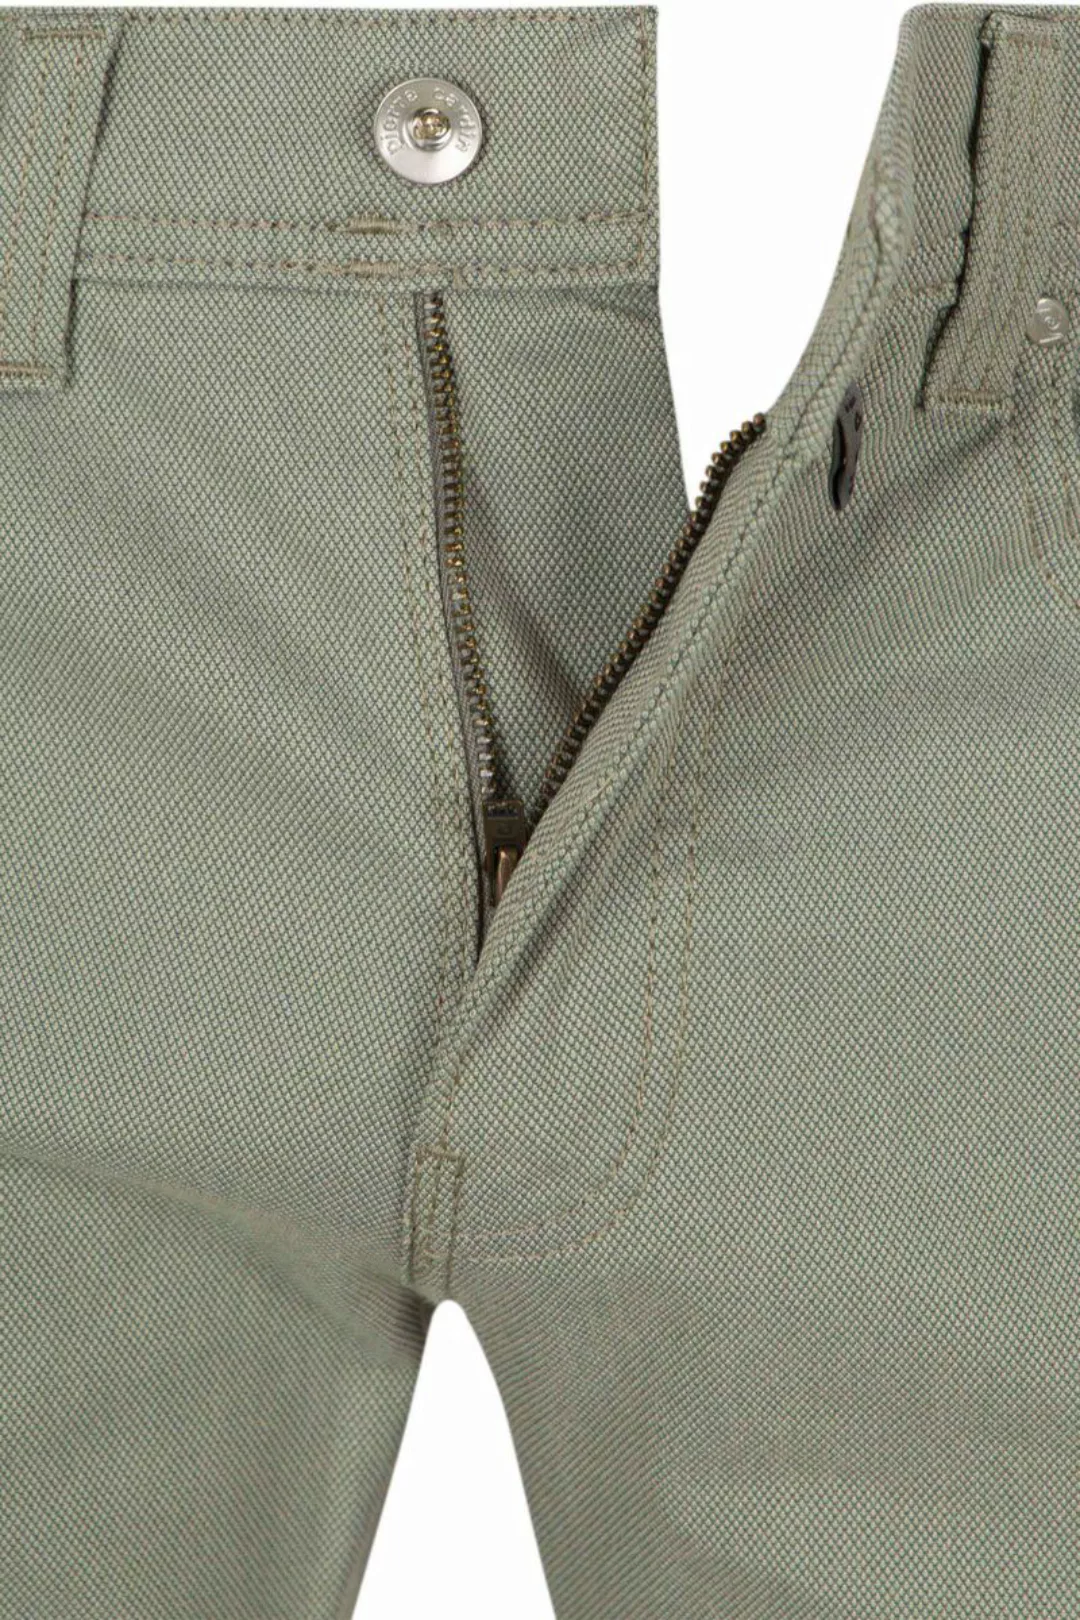 Pierre Cardin Trousers Lyon  Future Flex Grün - Größe W 34 - L 34 günstig online kaufen